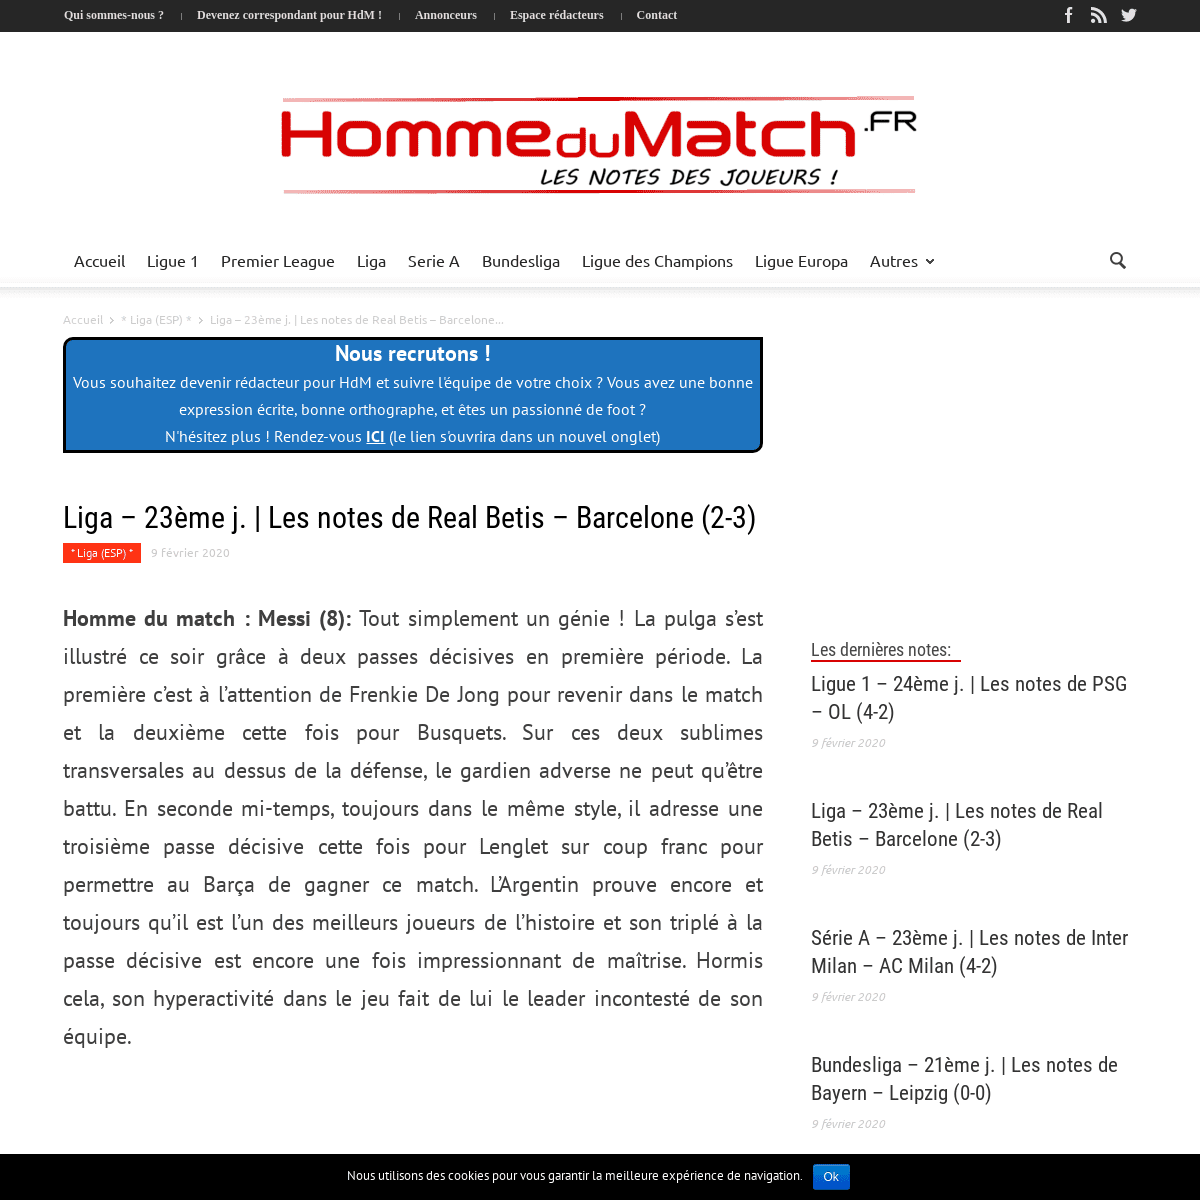 A complete backup of www.hommedumatch.fr/articles/espagne/liga-23eme-j-les-notes-de-real-betis-barcelone-2-3_2432784